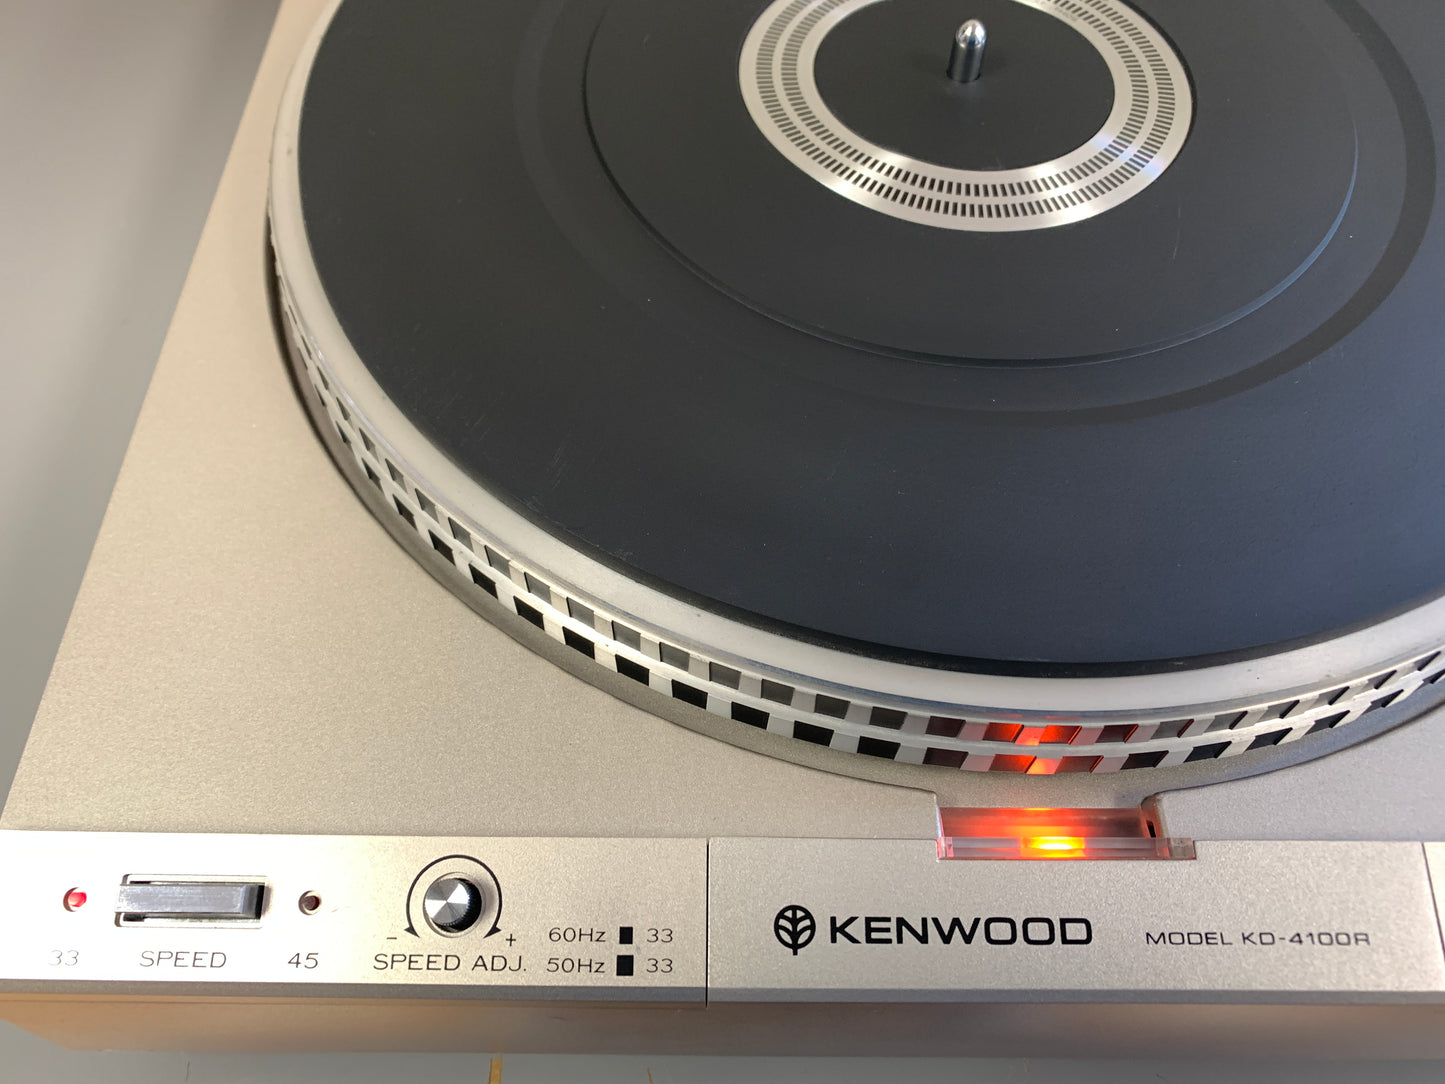 Kenwood KD-4100R Turntable